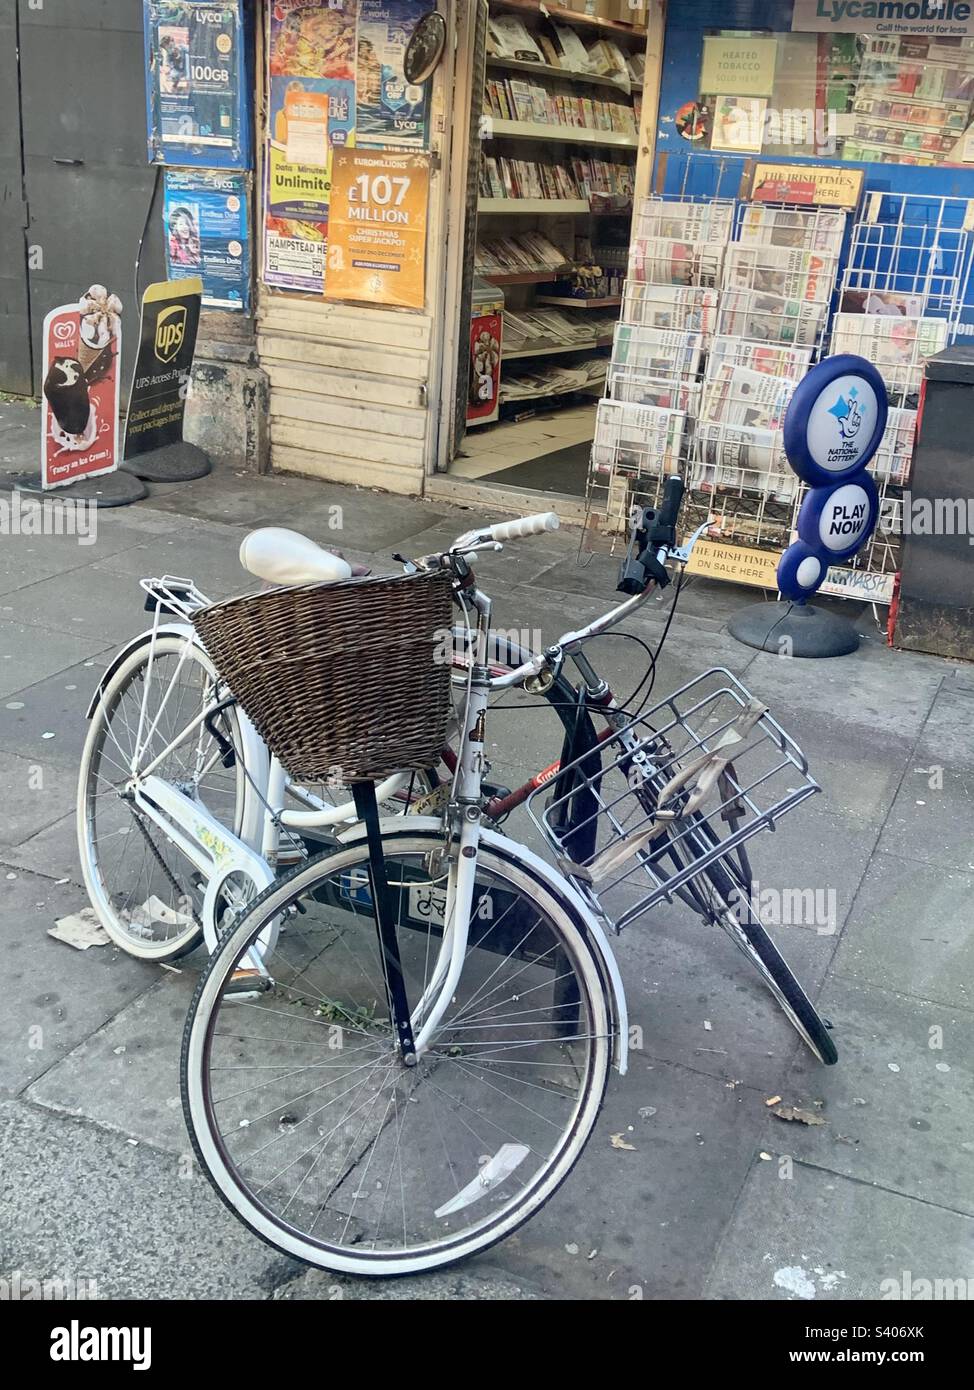 Deux vélos verrouillés en toute sécurité au poste métallique devant une boutique de l'agence de presse à Londres Banque D'Images